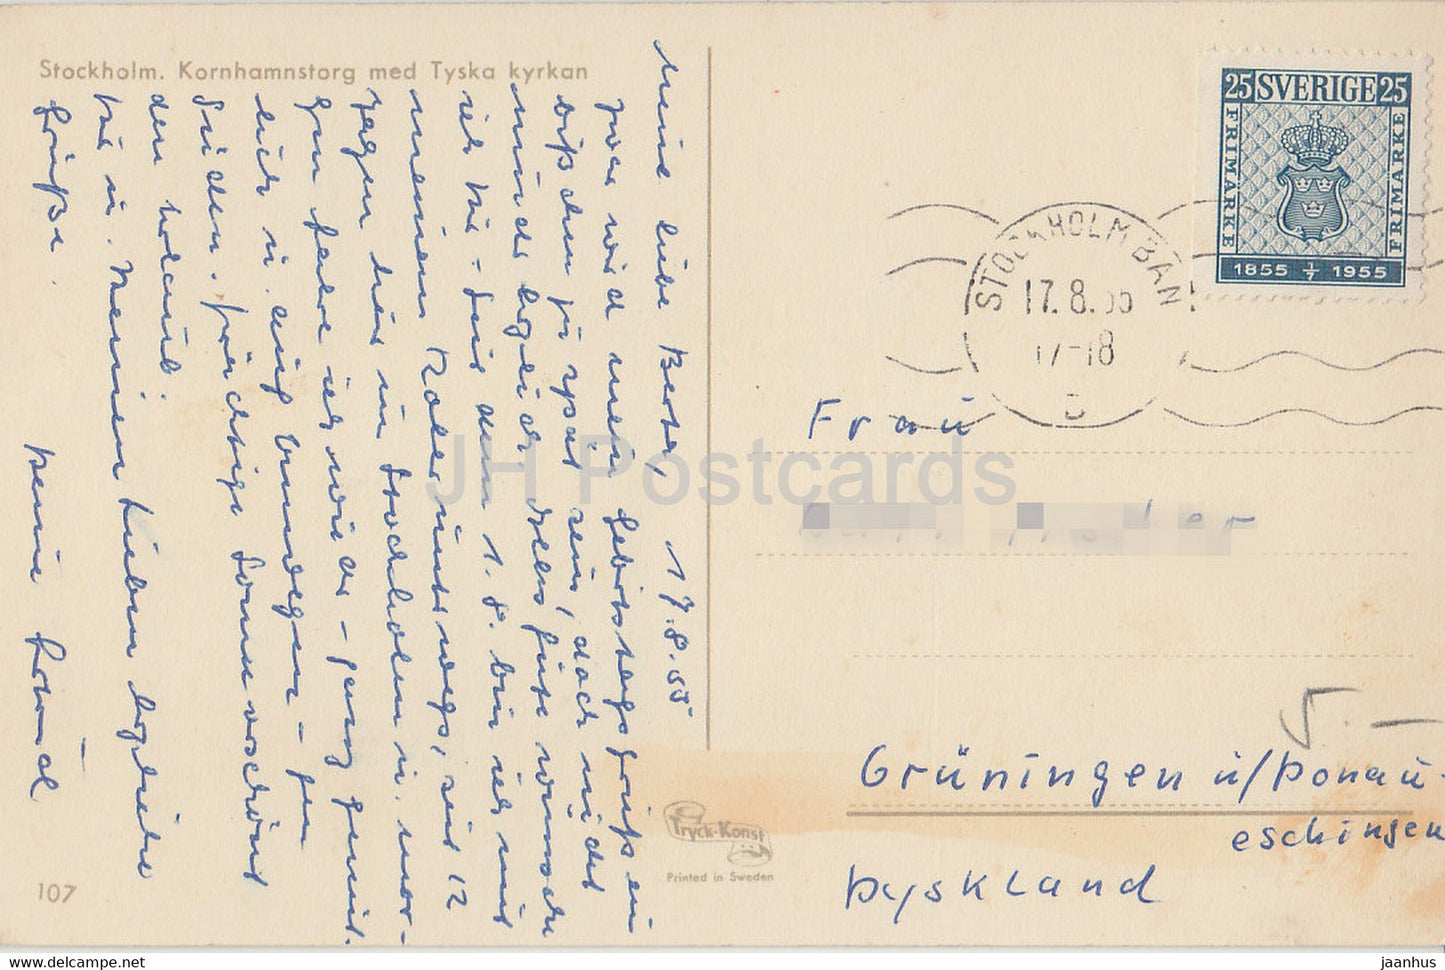 Stockholm - Kornhamnstorg med Tyska kyrkan - tram - carte postale ancienne - 1955 - Suède - utilisé